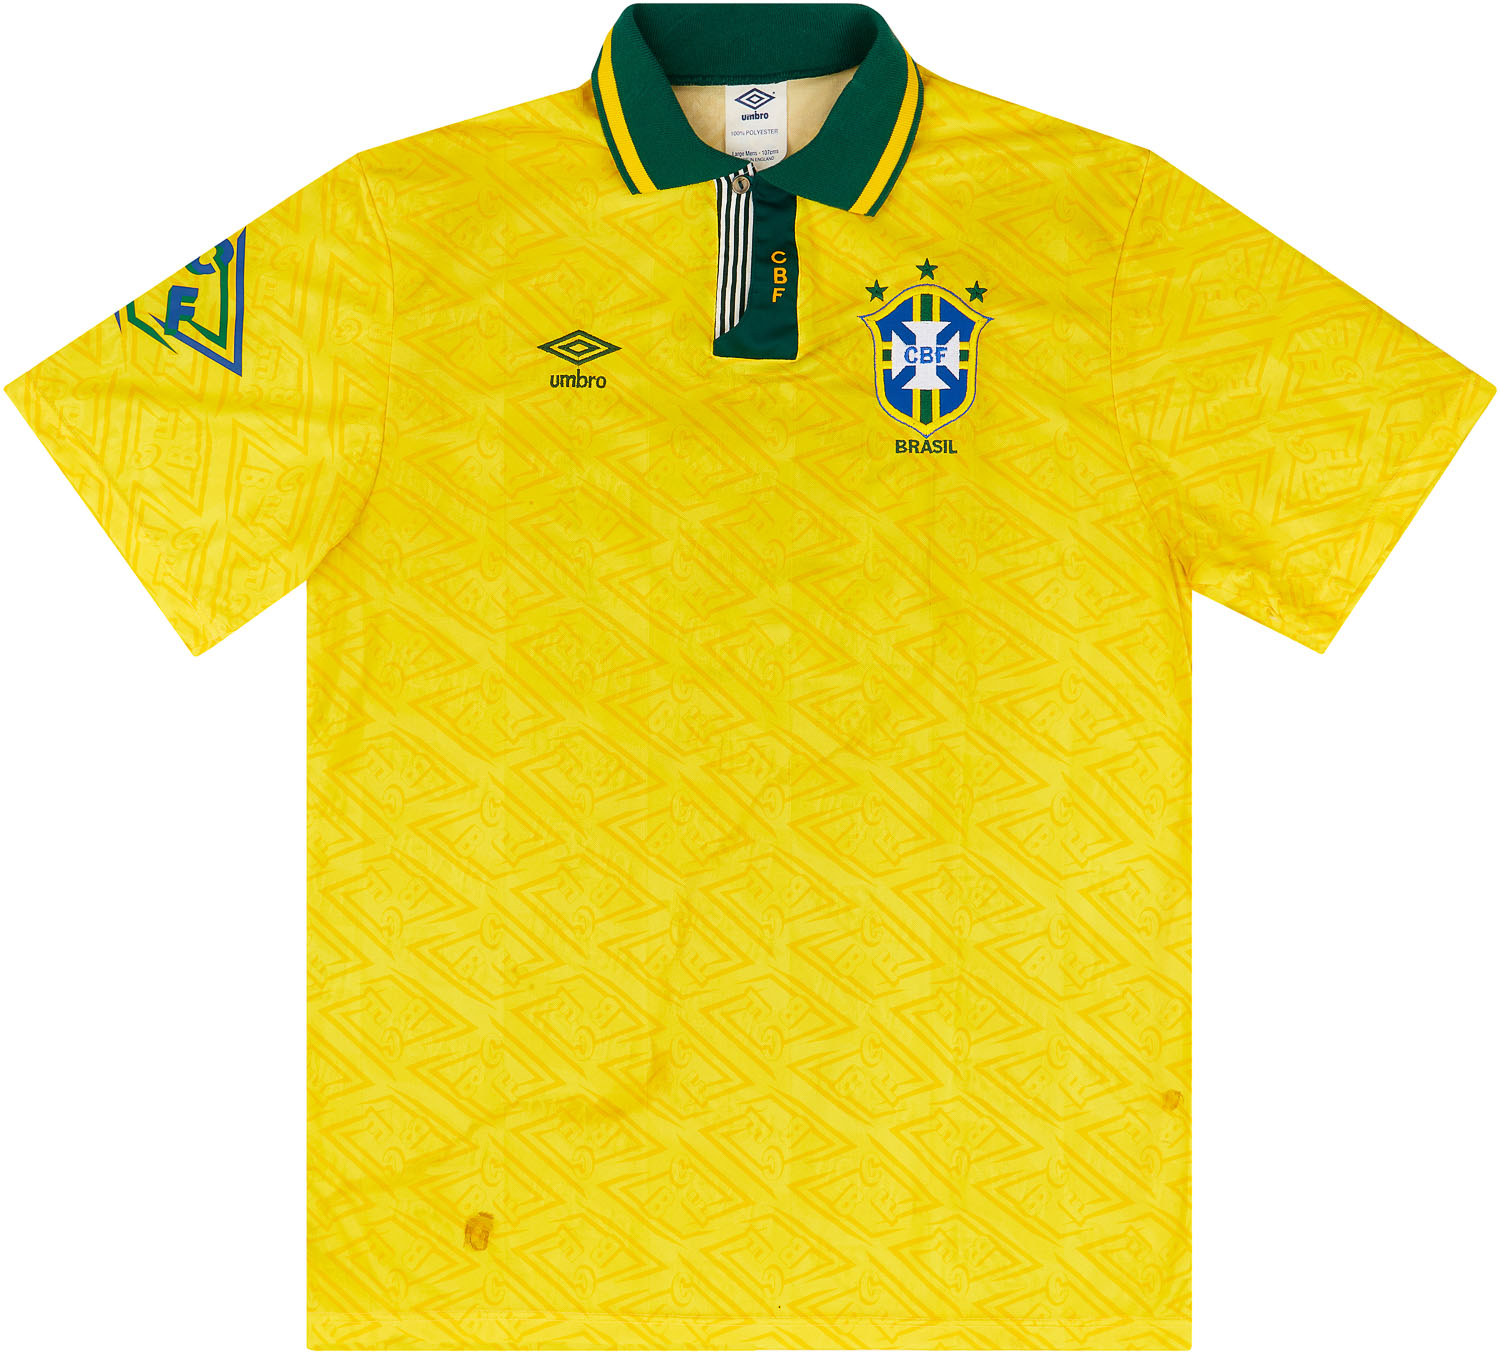 Retro Brazil trikot - Coole vintage trikots von deinem länder!